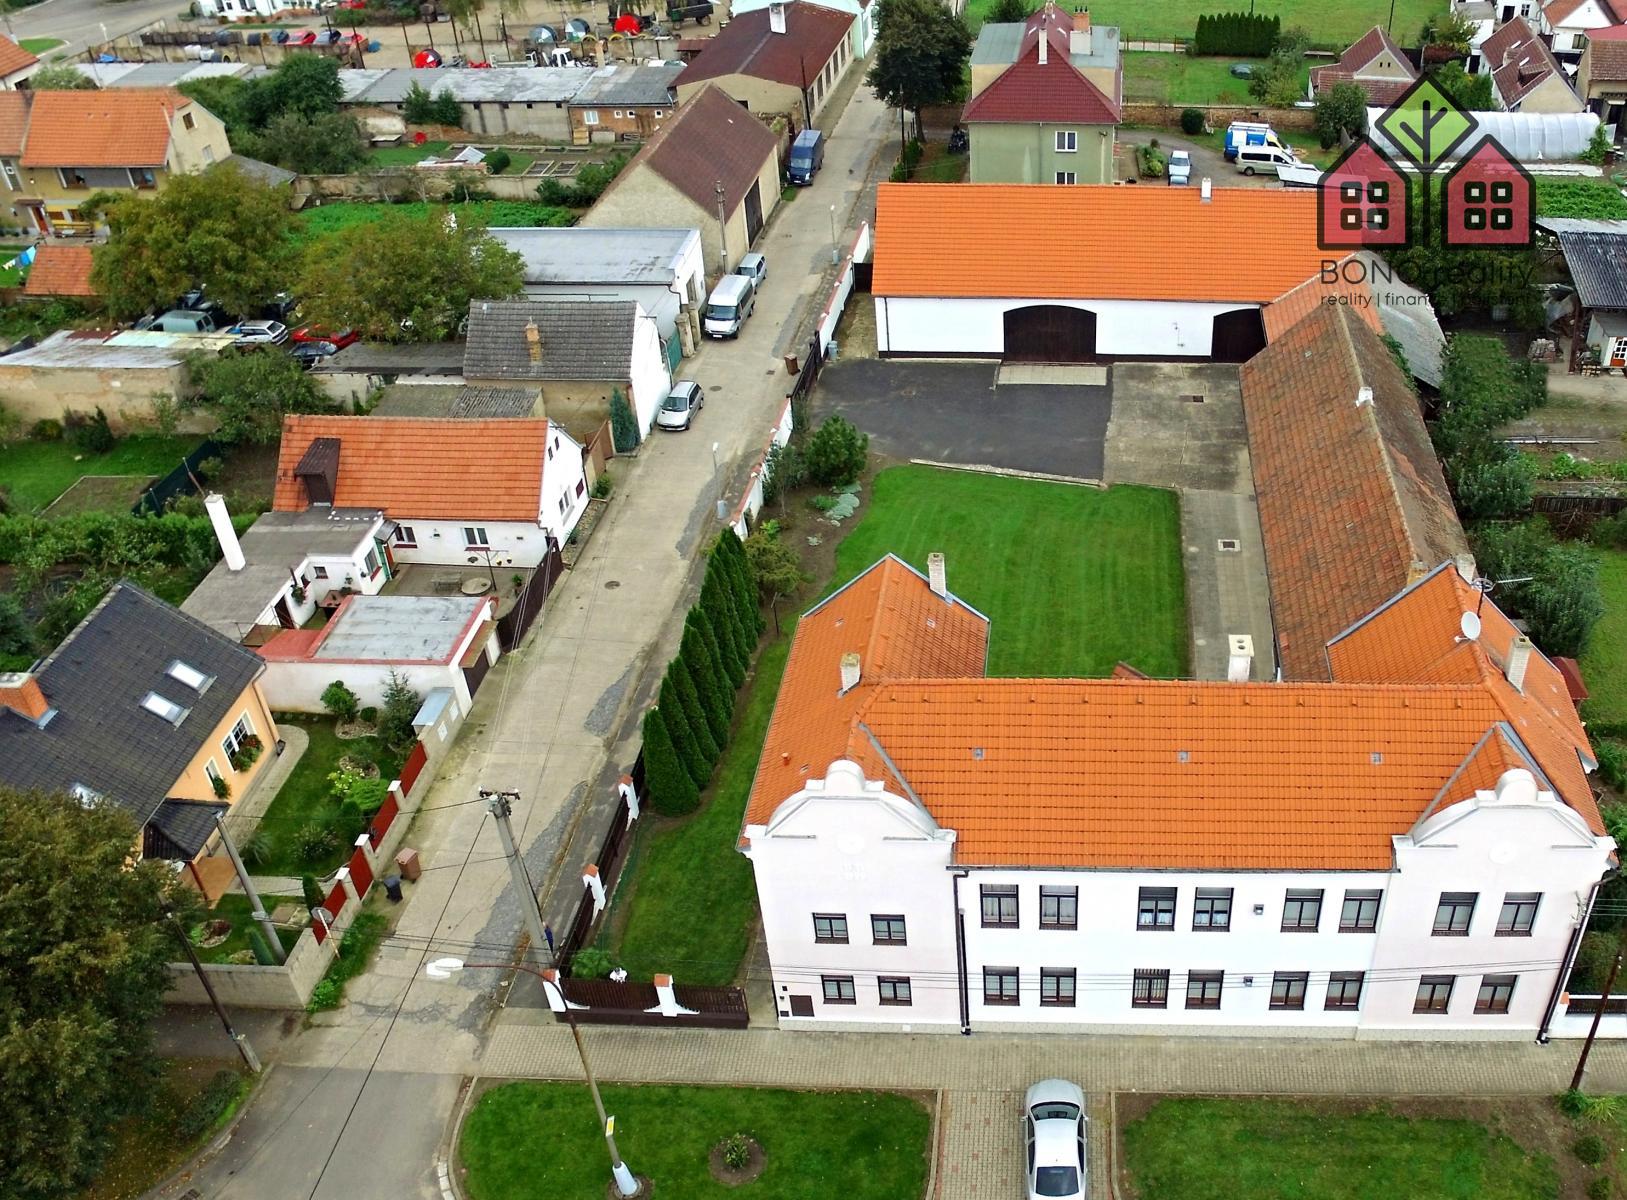 komerční nemovitost, pozemek 1962 m2, dvě stodoly, garáže, dva byty, okres Litoměřice, obec Travčice, obrázek č. 1